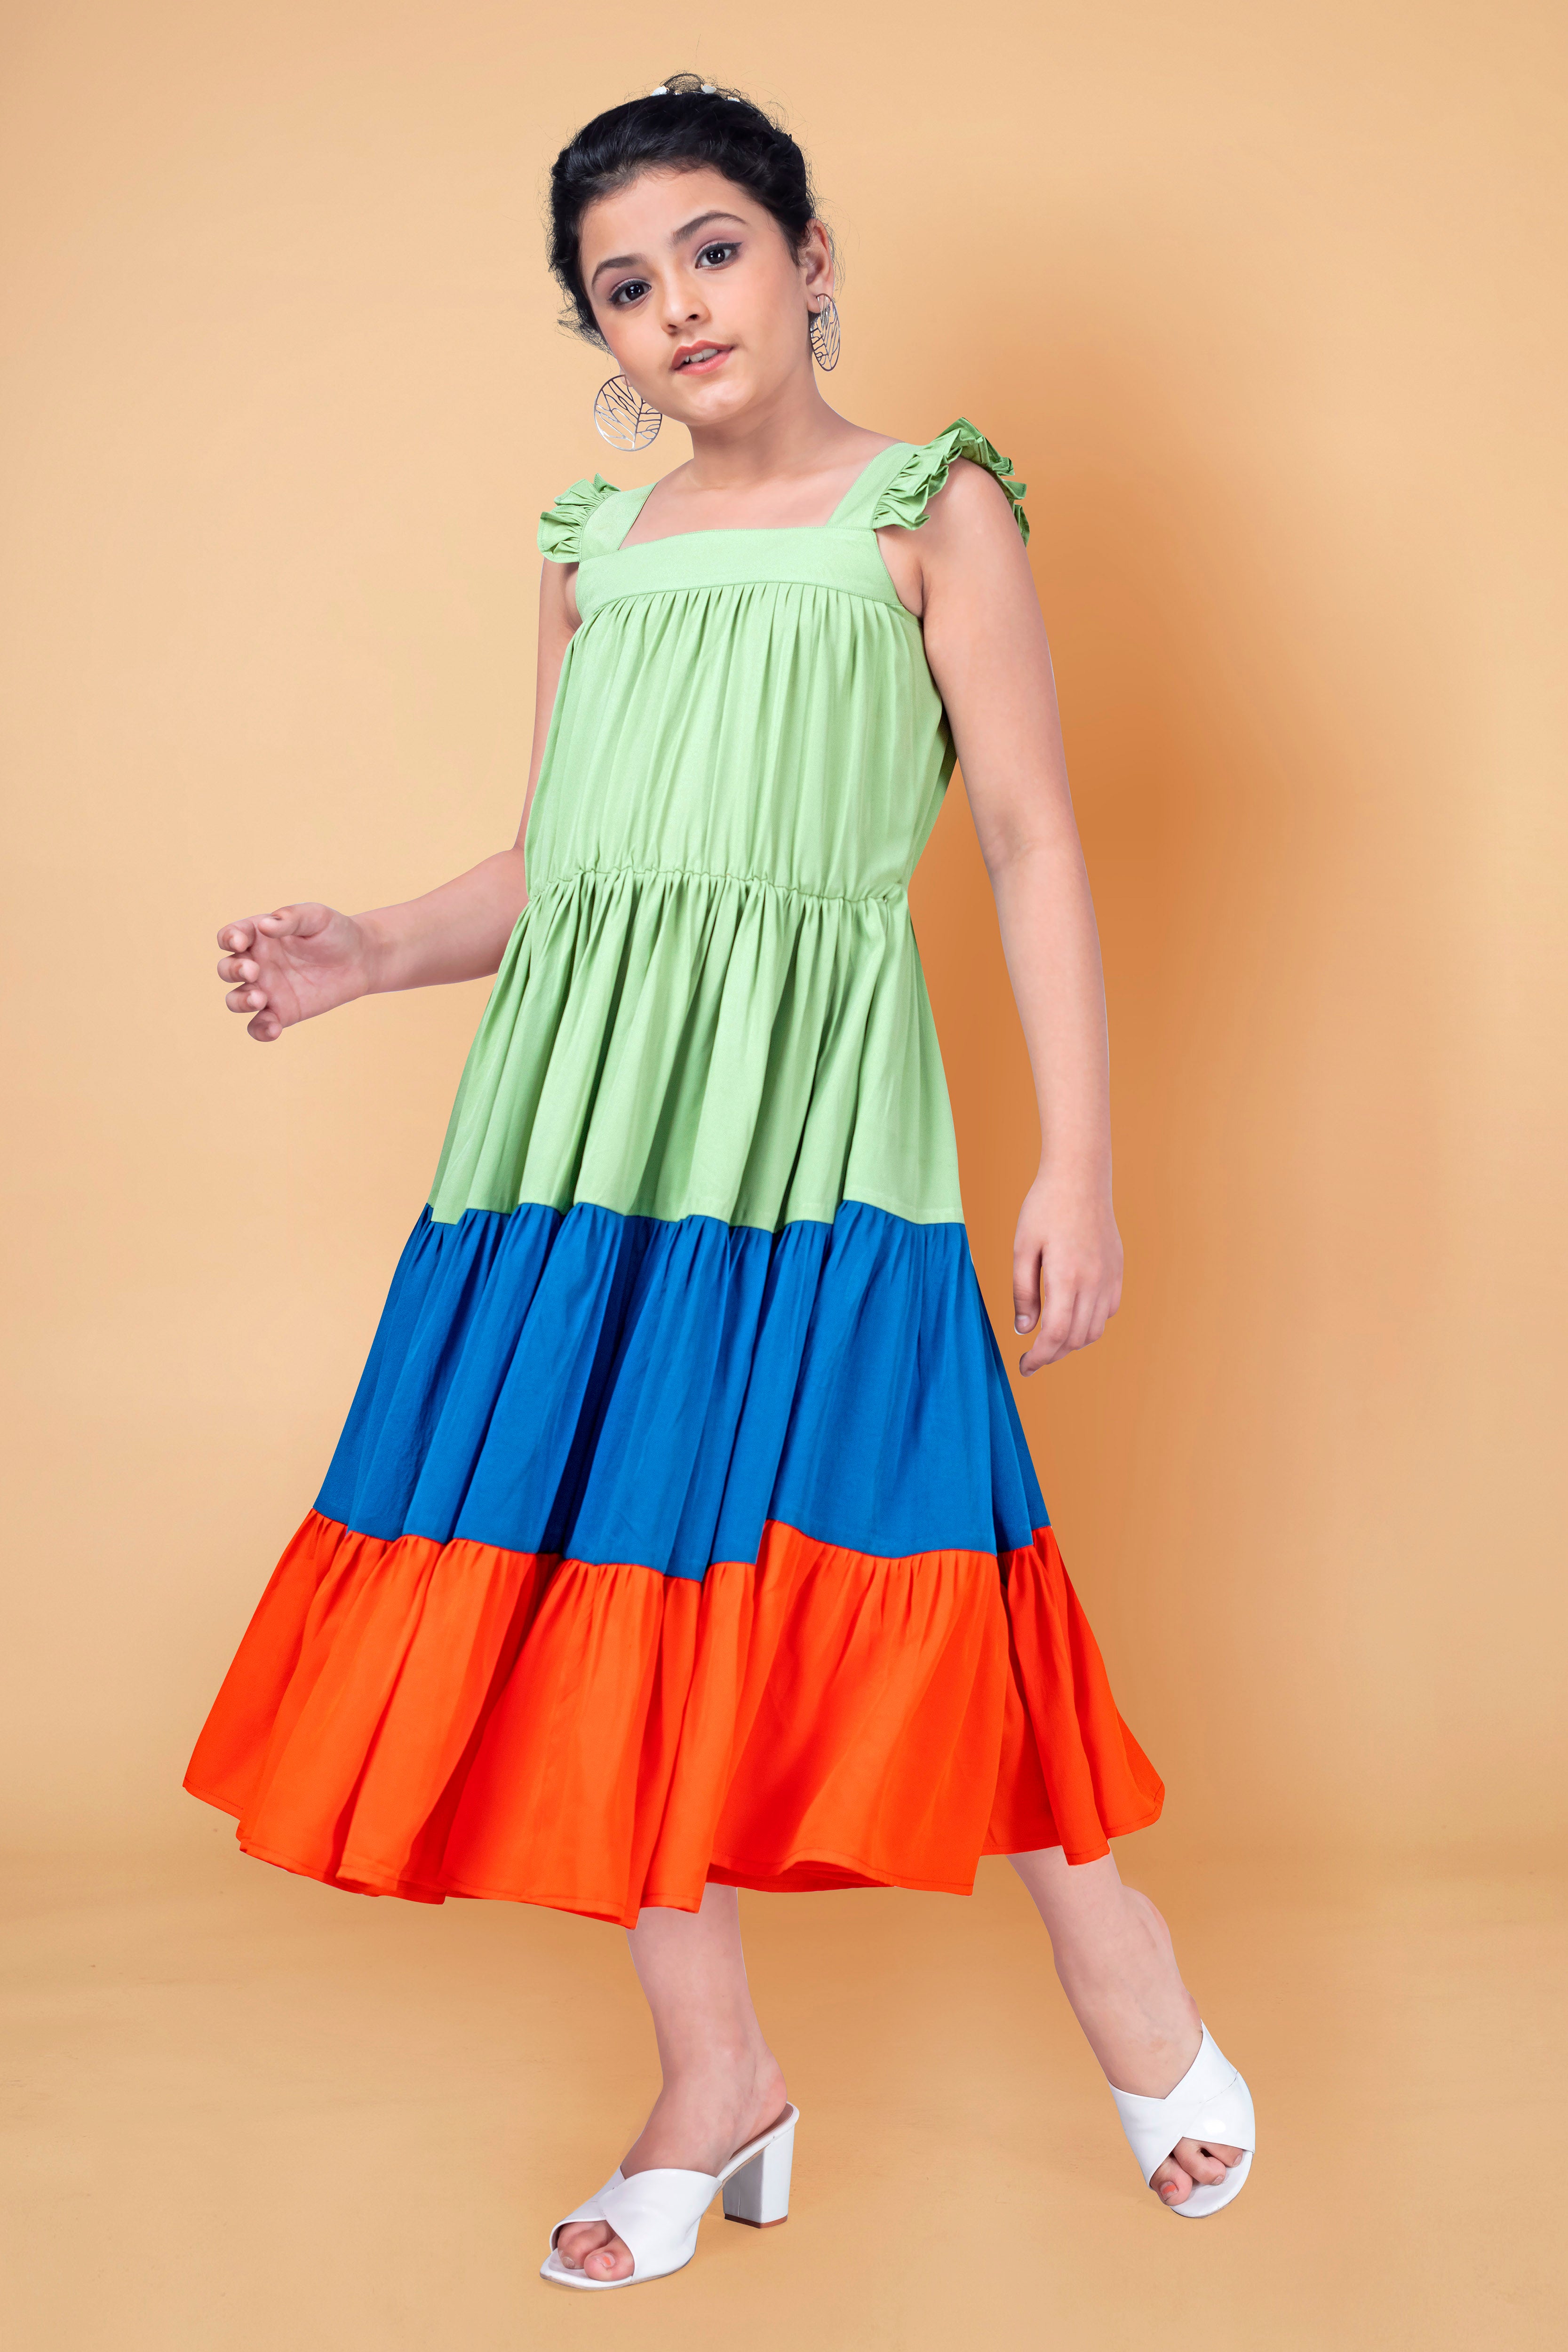 Buy Discount Flower Girl Dresses Online - eDressit.com